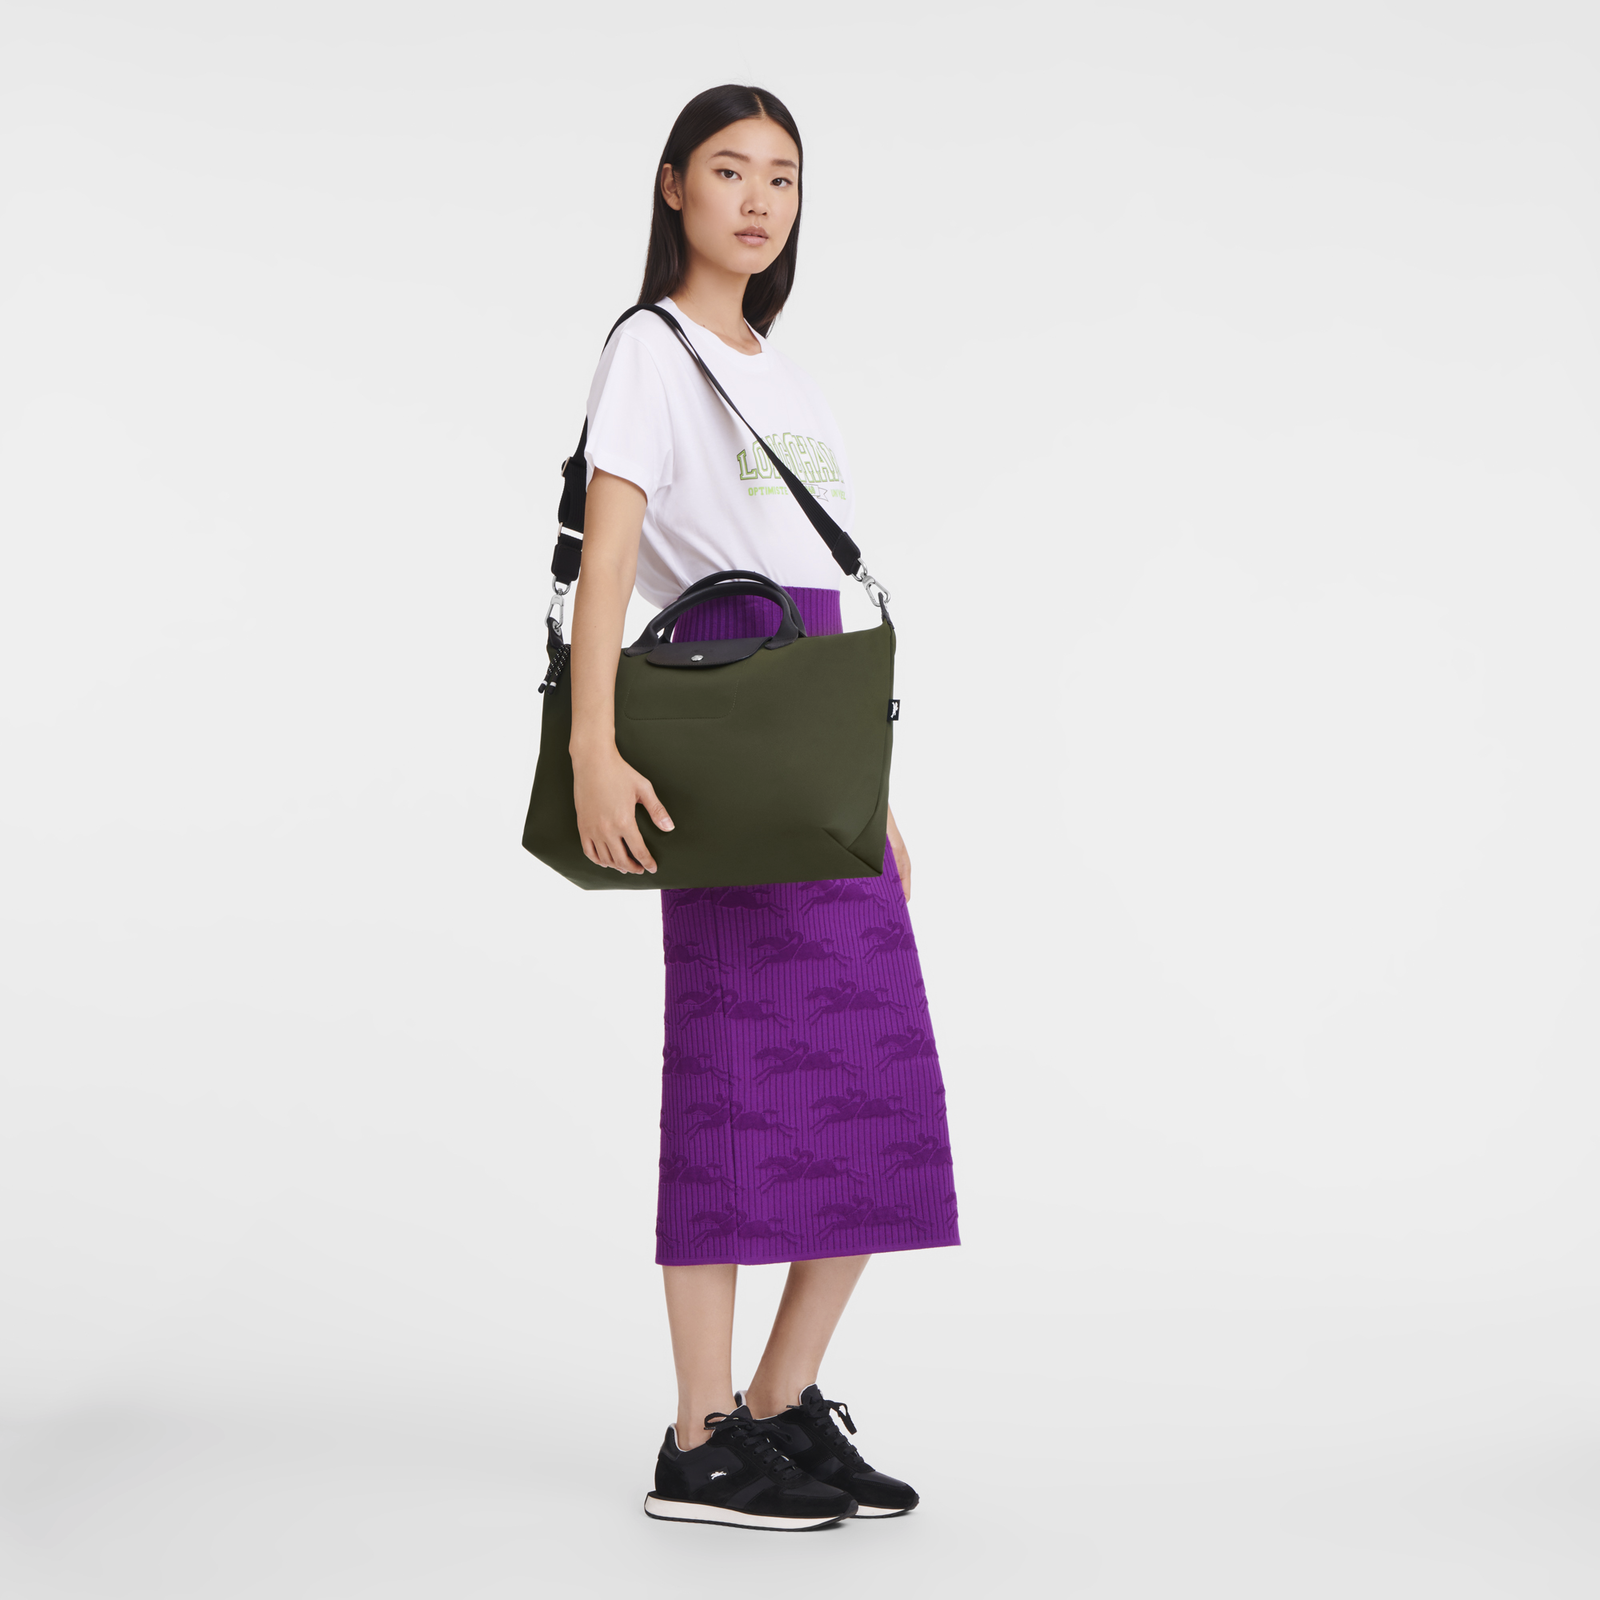 Le Pliage Energy Handbag XL, Khaki